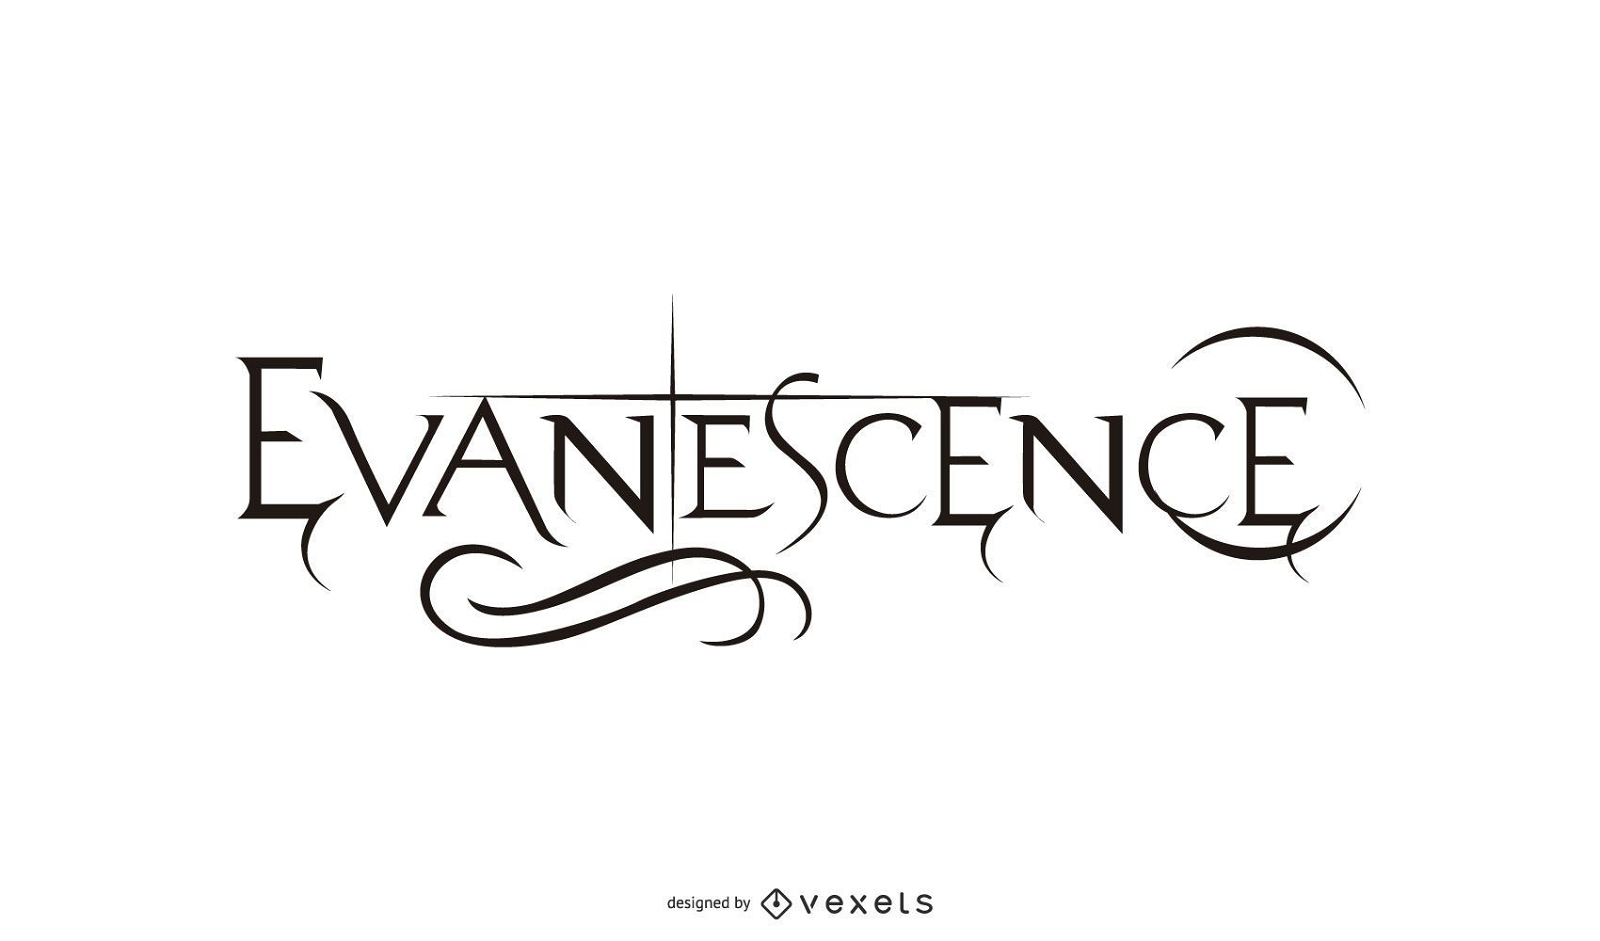 Evanescence: Logotipo de la banda de rock